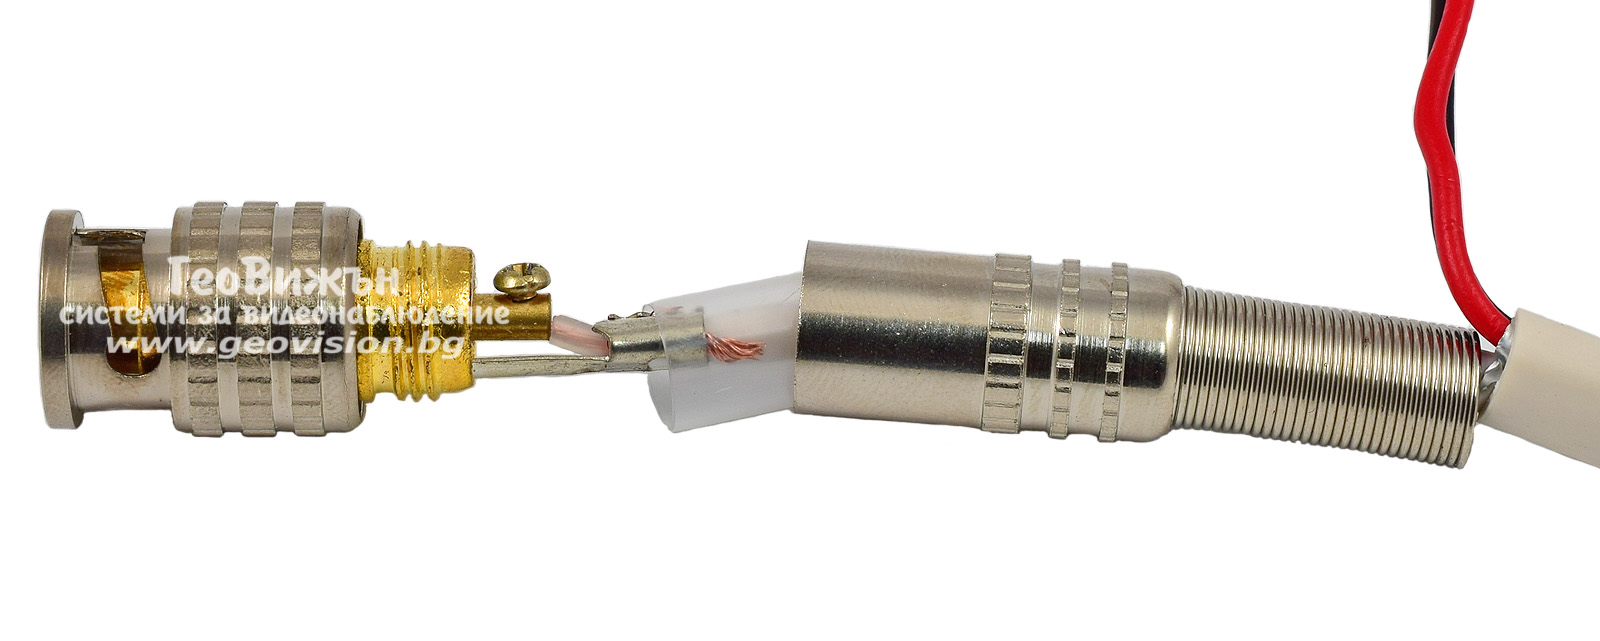 BNC позлатен конектор за коаксиален и микрокоаксиален кабел с винт. Пружинен предпазител ф7 мм